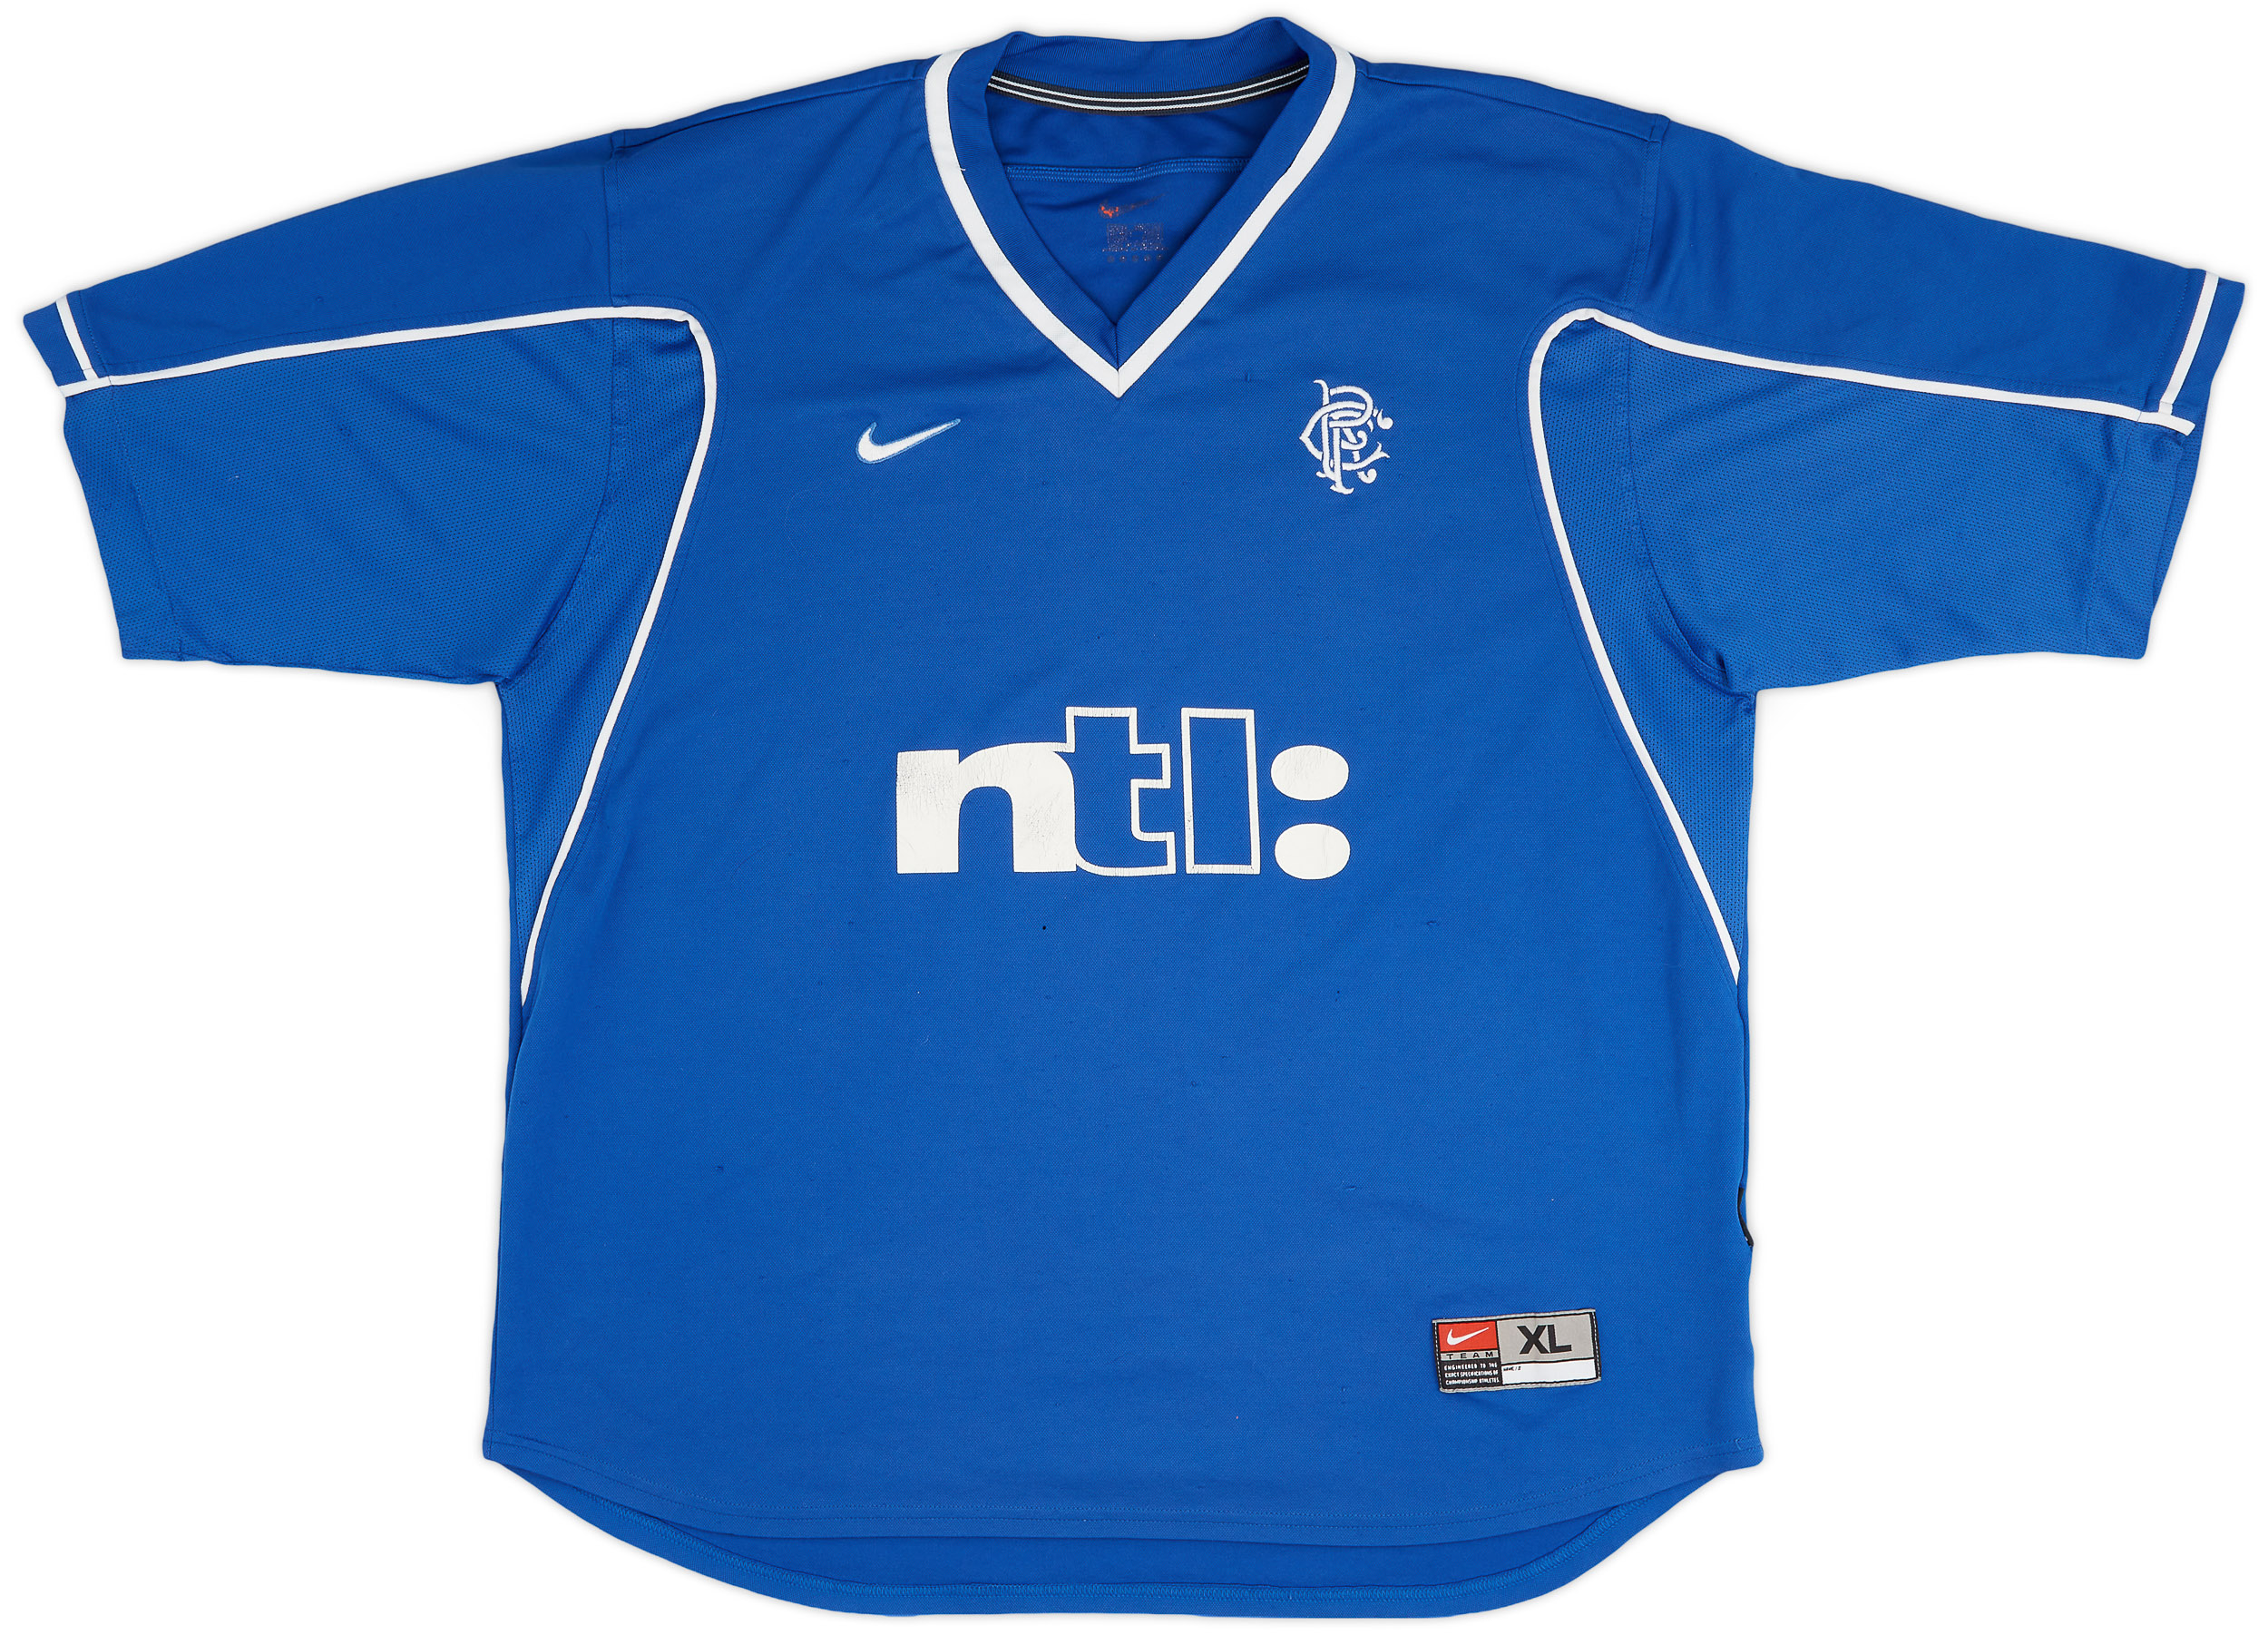 1999-01 Rangers Home Shirt - 6/10 - ()